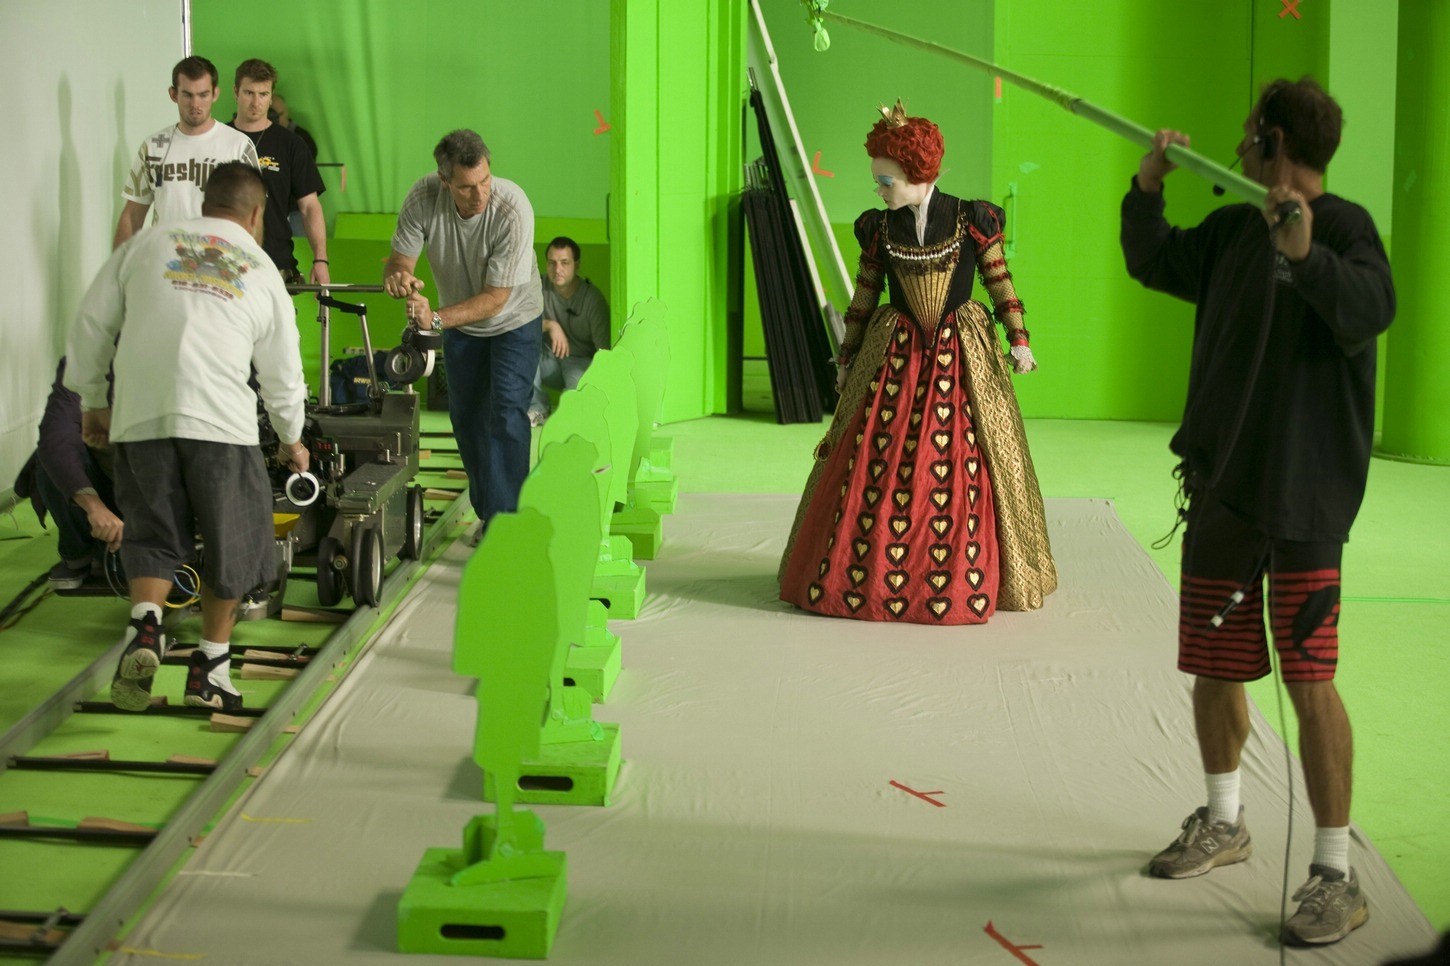 The Red Queen in Alice in Wonderland (2010) Behind the Scenes